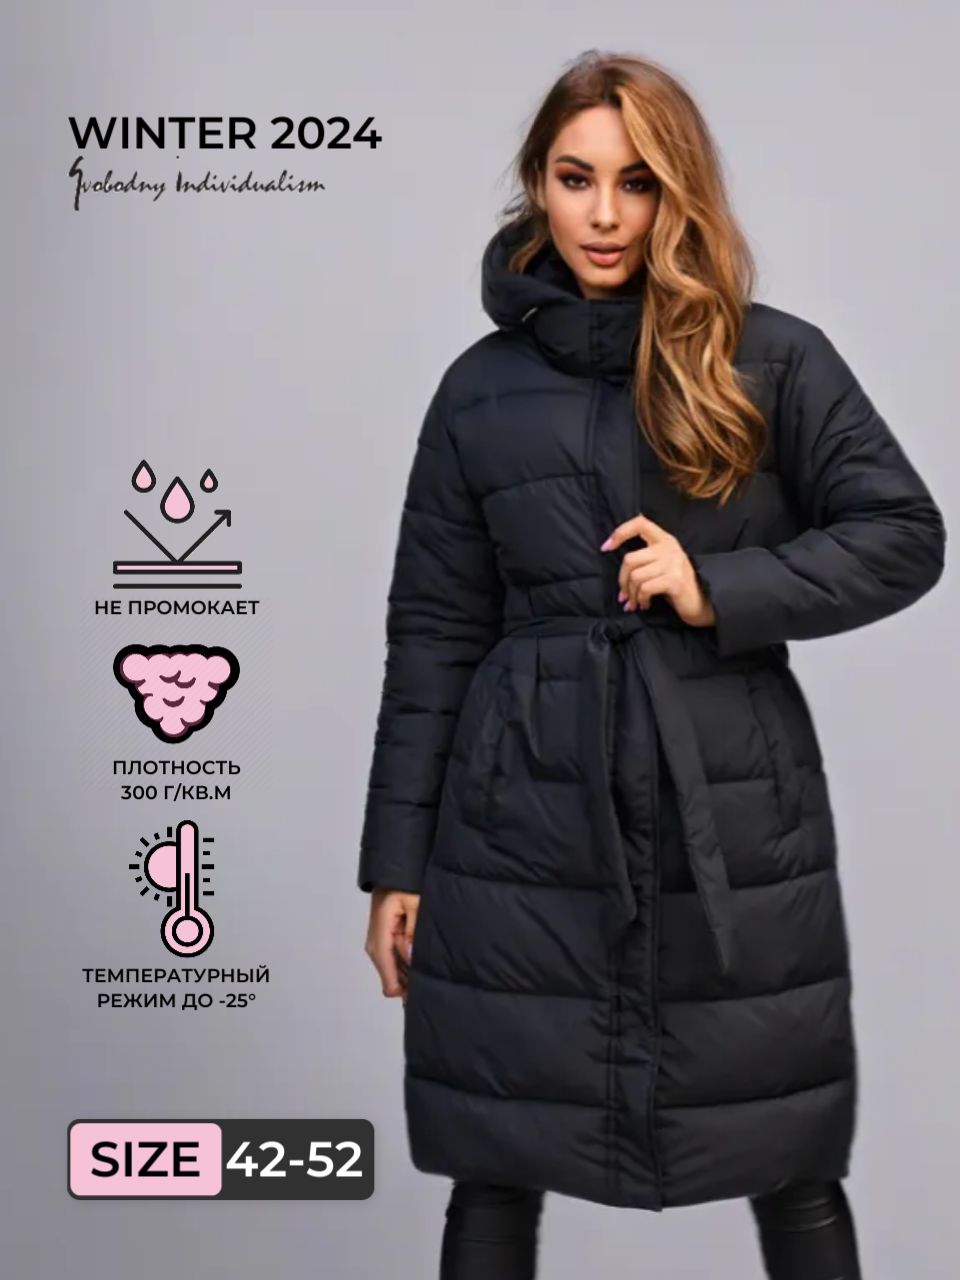 Пальто женское Svobodny Individualism P702 черное 46 RU